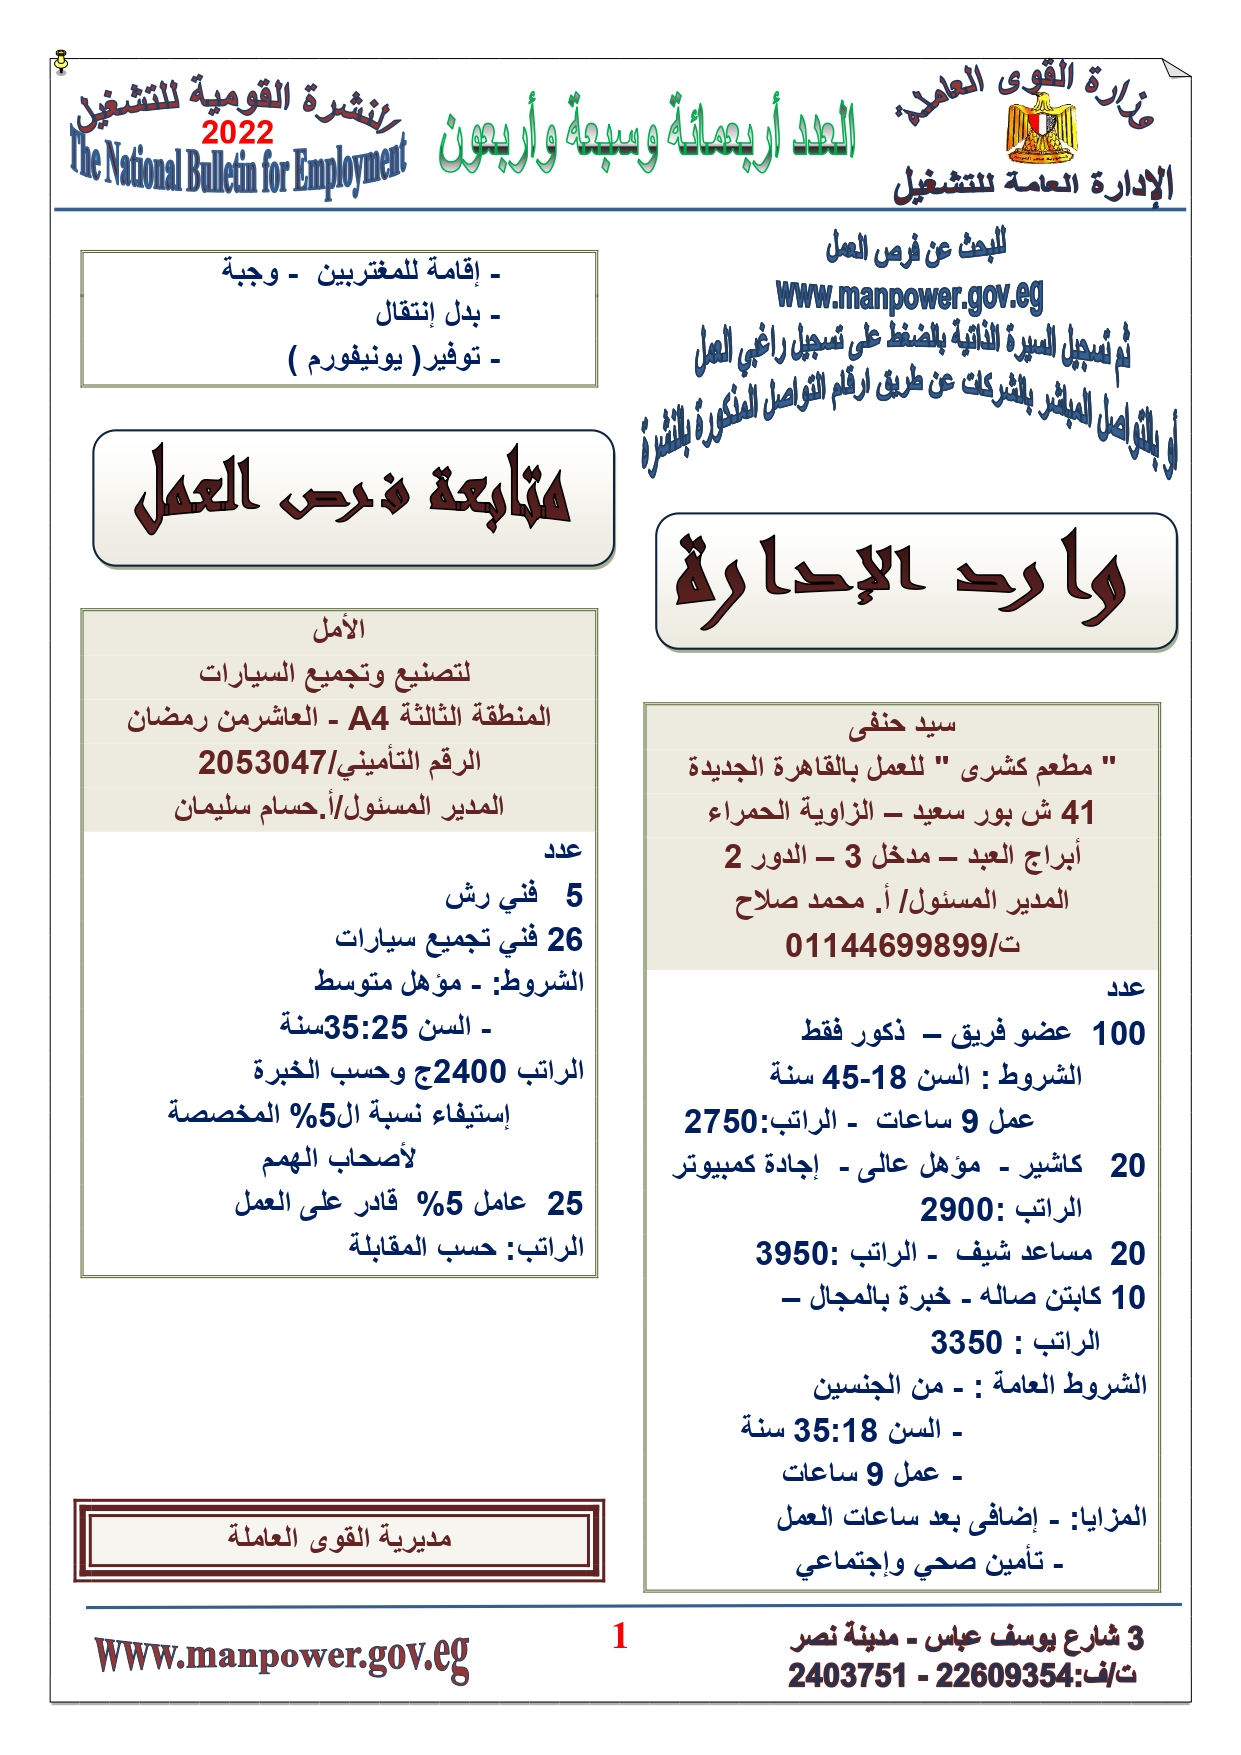 وظائف خالية بمصر وزارة القوي العاملة تعلن عن 2530 وظيفة شاغرة لجميع المؤهلات خلال فبراير ومارس 2022 1